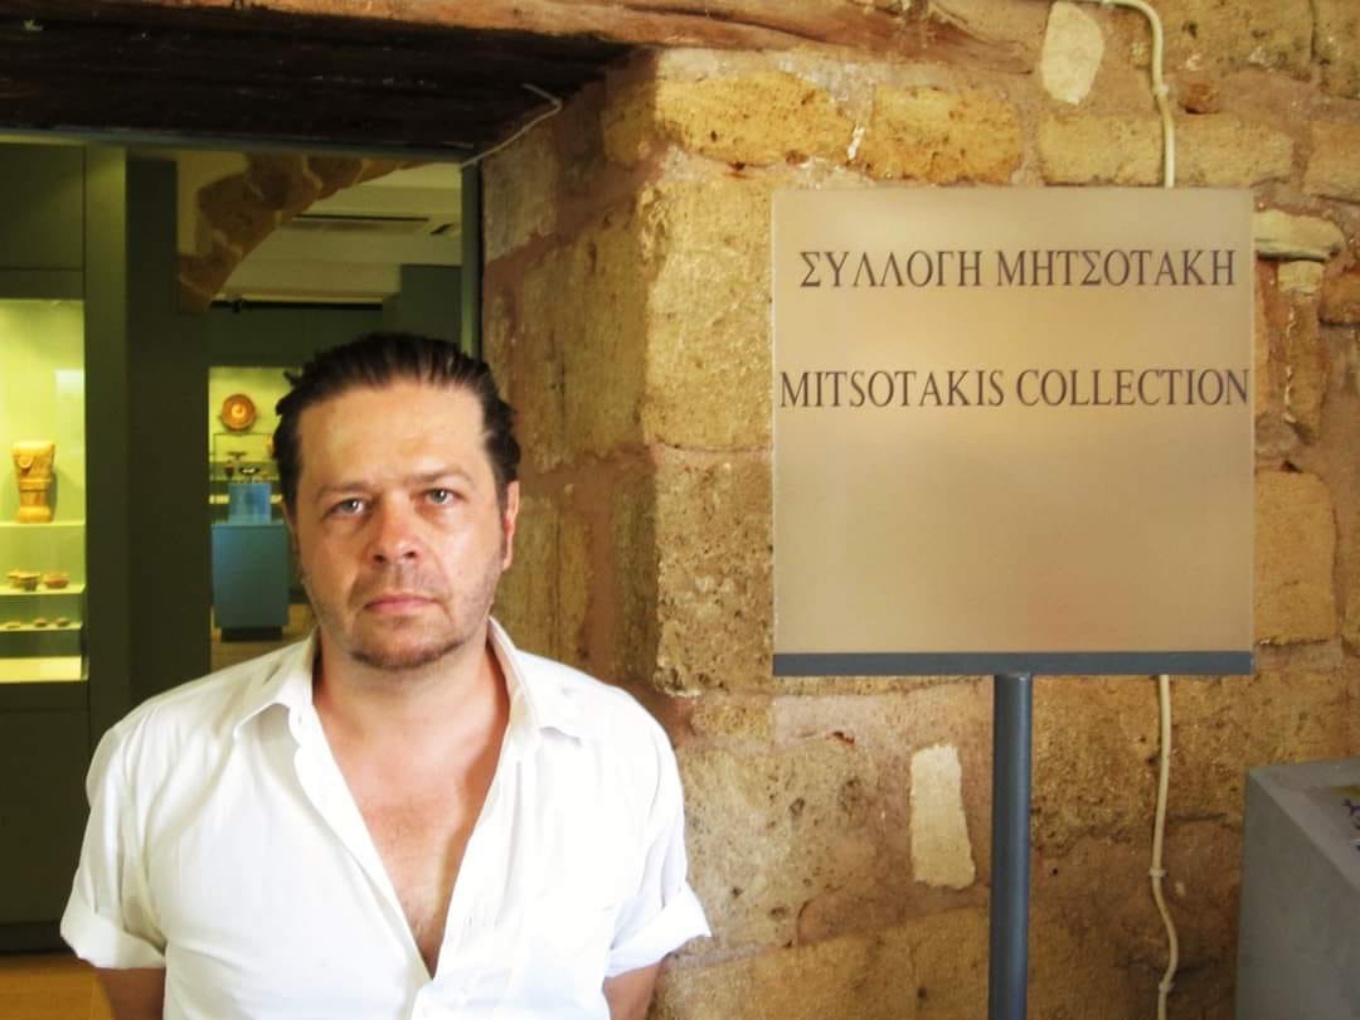 Επικό τρολάρισμα Δ. Μητσοτάκη: «Φωτογραφήθηκε» στην αρχαιολογική συλλογή του Μητσοτακέικου